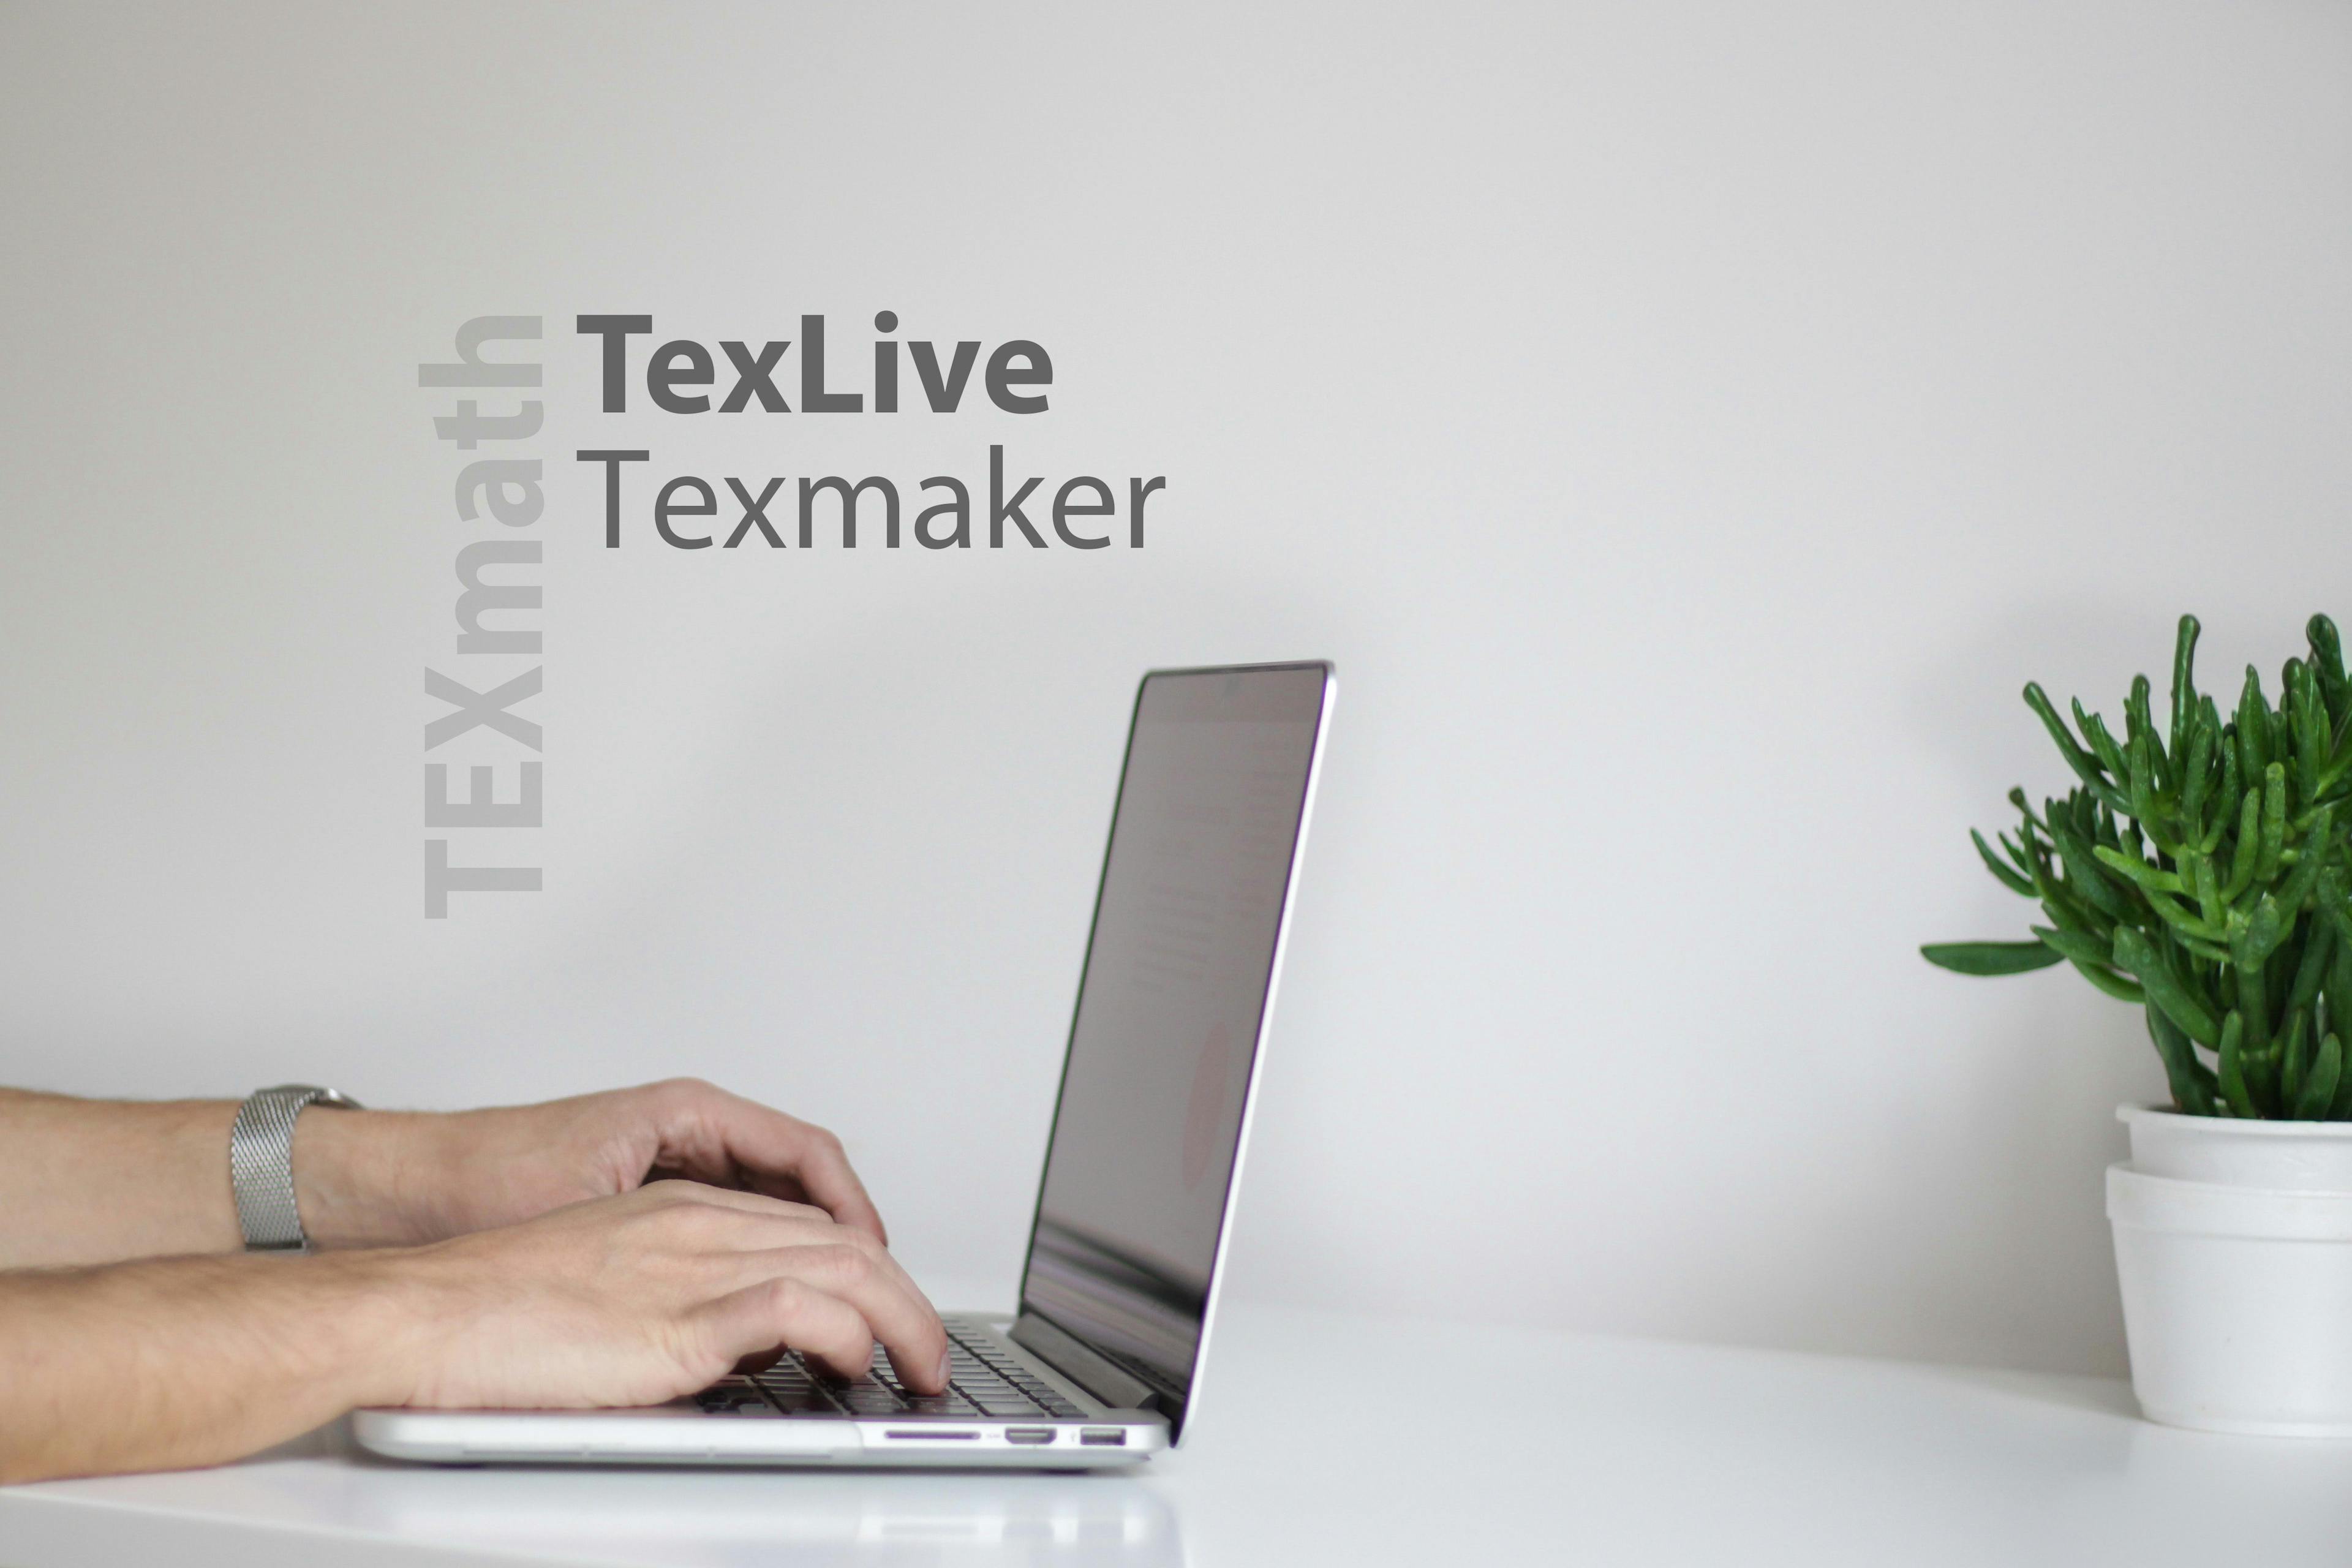 Cài đặt TexLive và Texmaker trên Windows - Hướng dẫn chi tiết (cập nhật 2023)